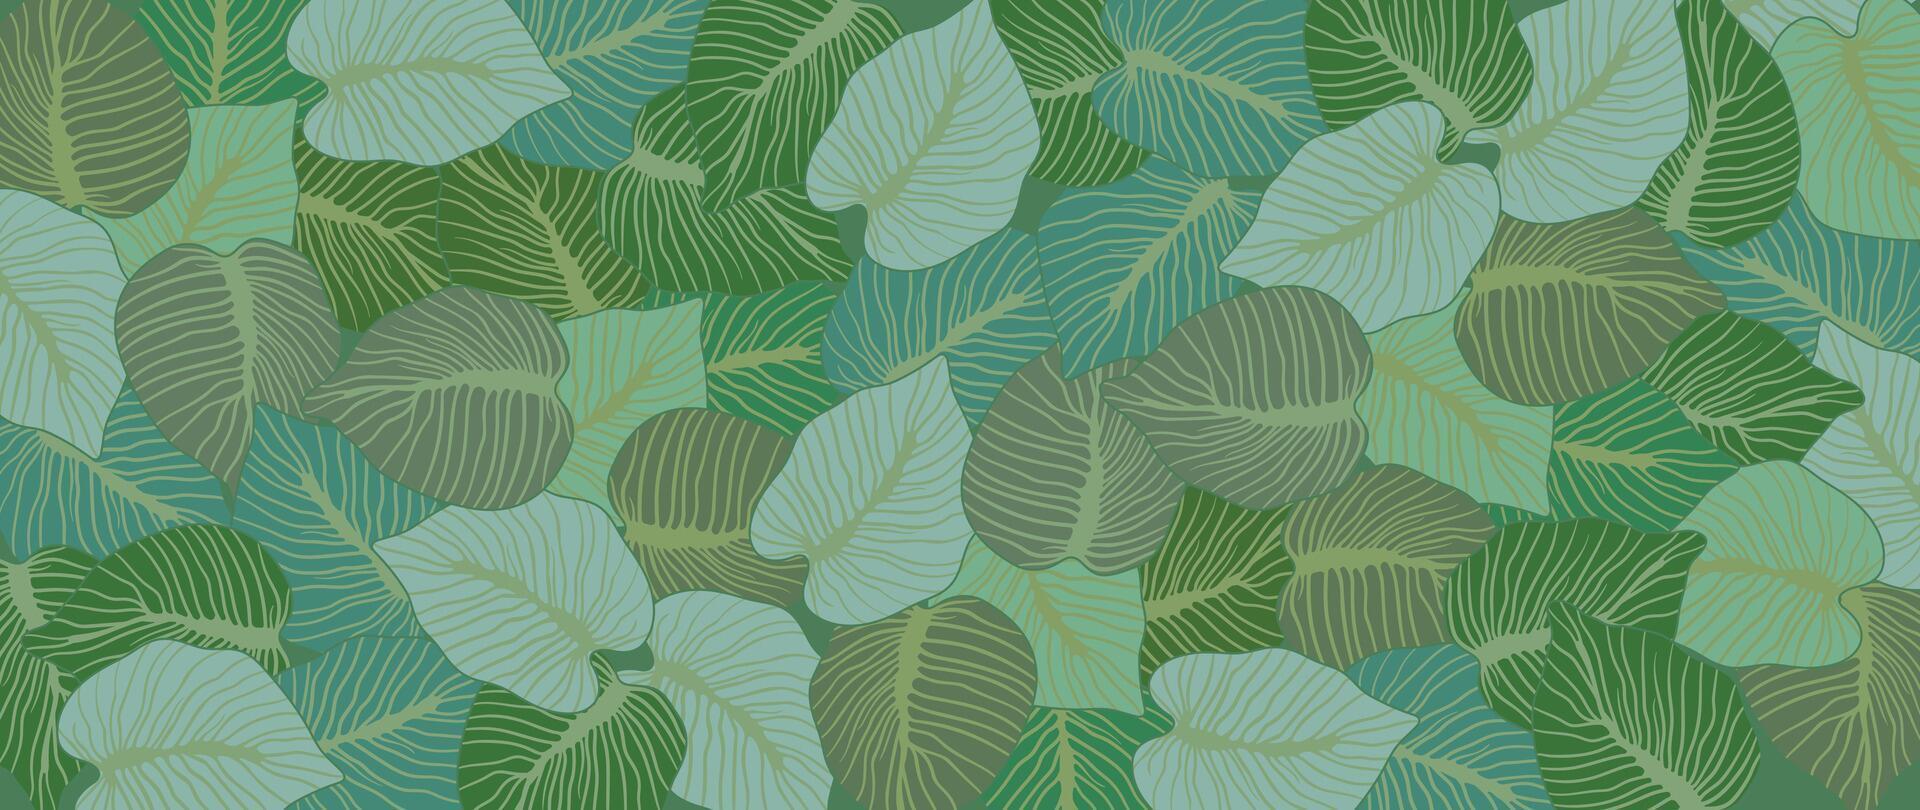 abstrato folhagem botânico fundo . verde cor papel de parede do tropical plantas, folha galhos, folhas. folhagem Projeto para bandeira, impressões, decoração, parede arte, decoração. vetor